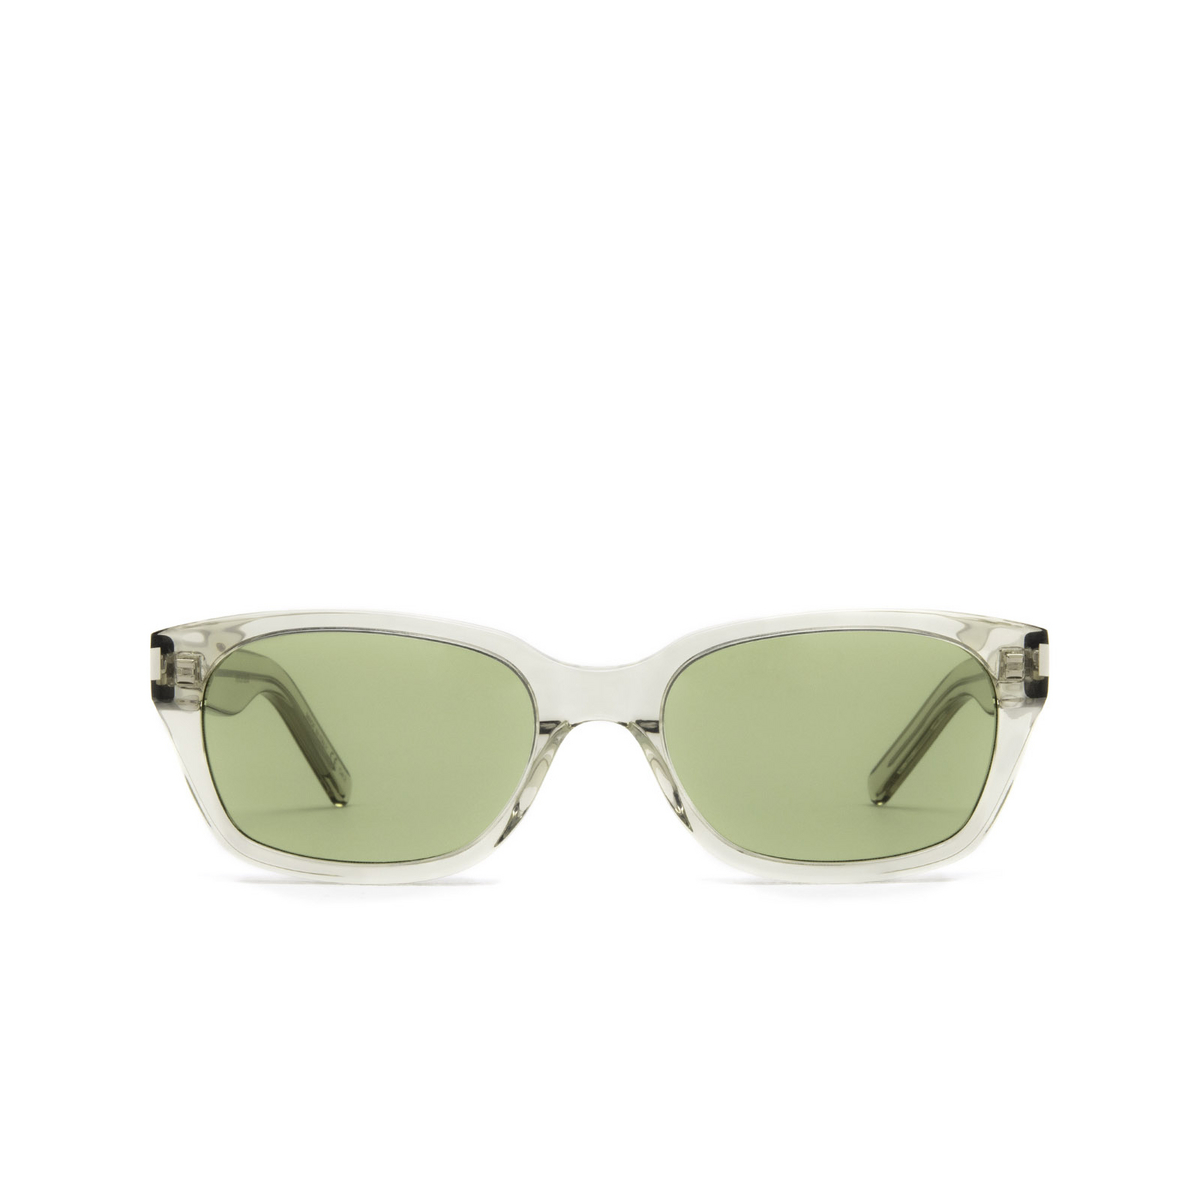 Saint Laurent® Rectangle Sunglasses: SL 522 color Green 006 - front view.